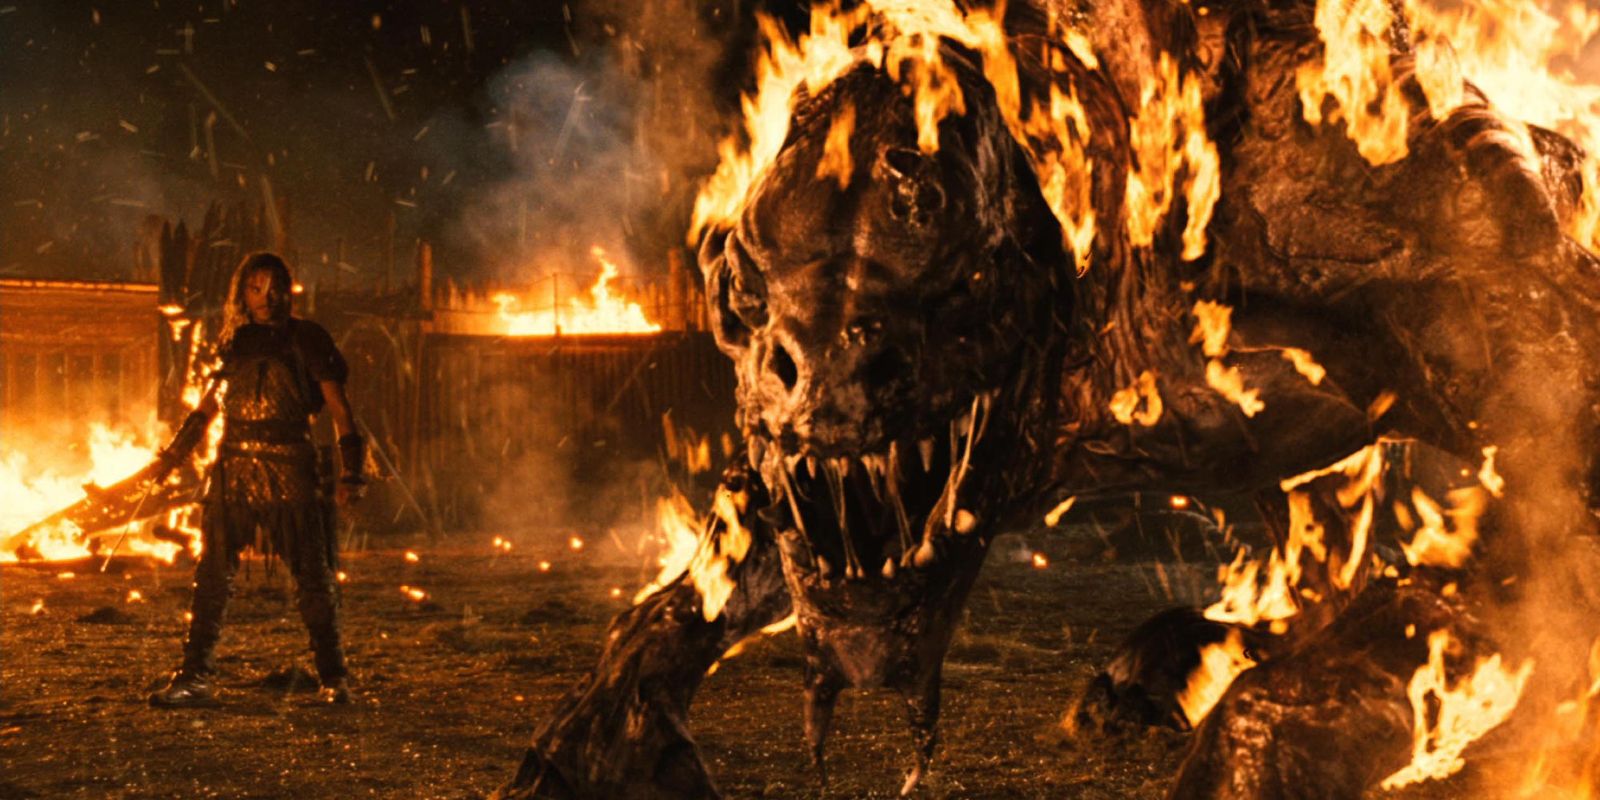 Alien Dragon On Fire in Outlander 2008.